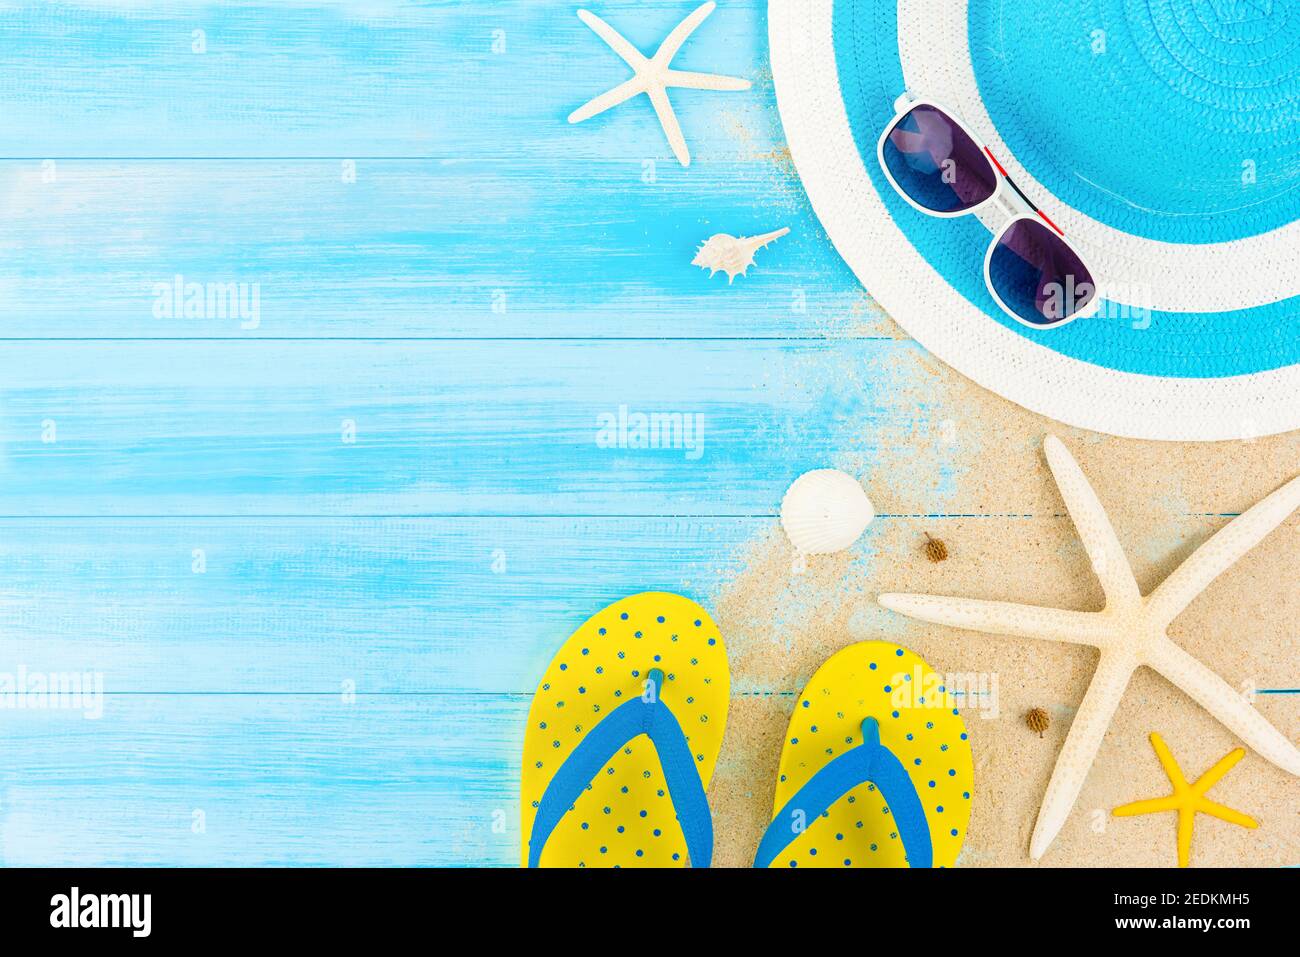 Colorato estate vacanza spiaggia sfondo con accessori su pannello di legno blu chiaro, bordo design sulla vista superiore con spazio copia Foto Stock